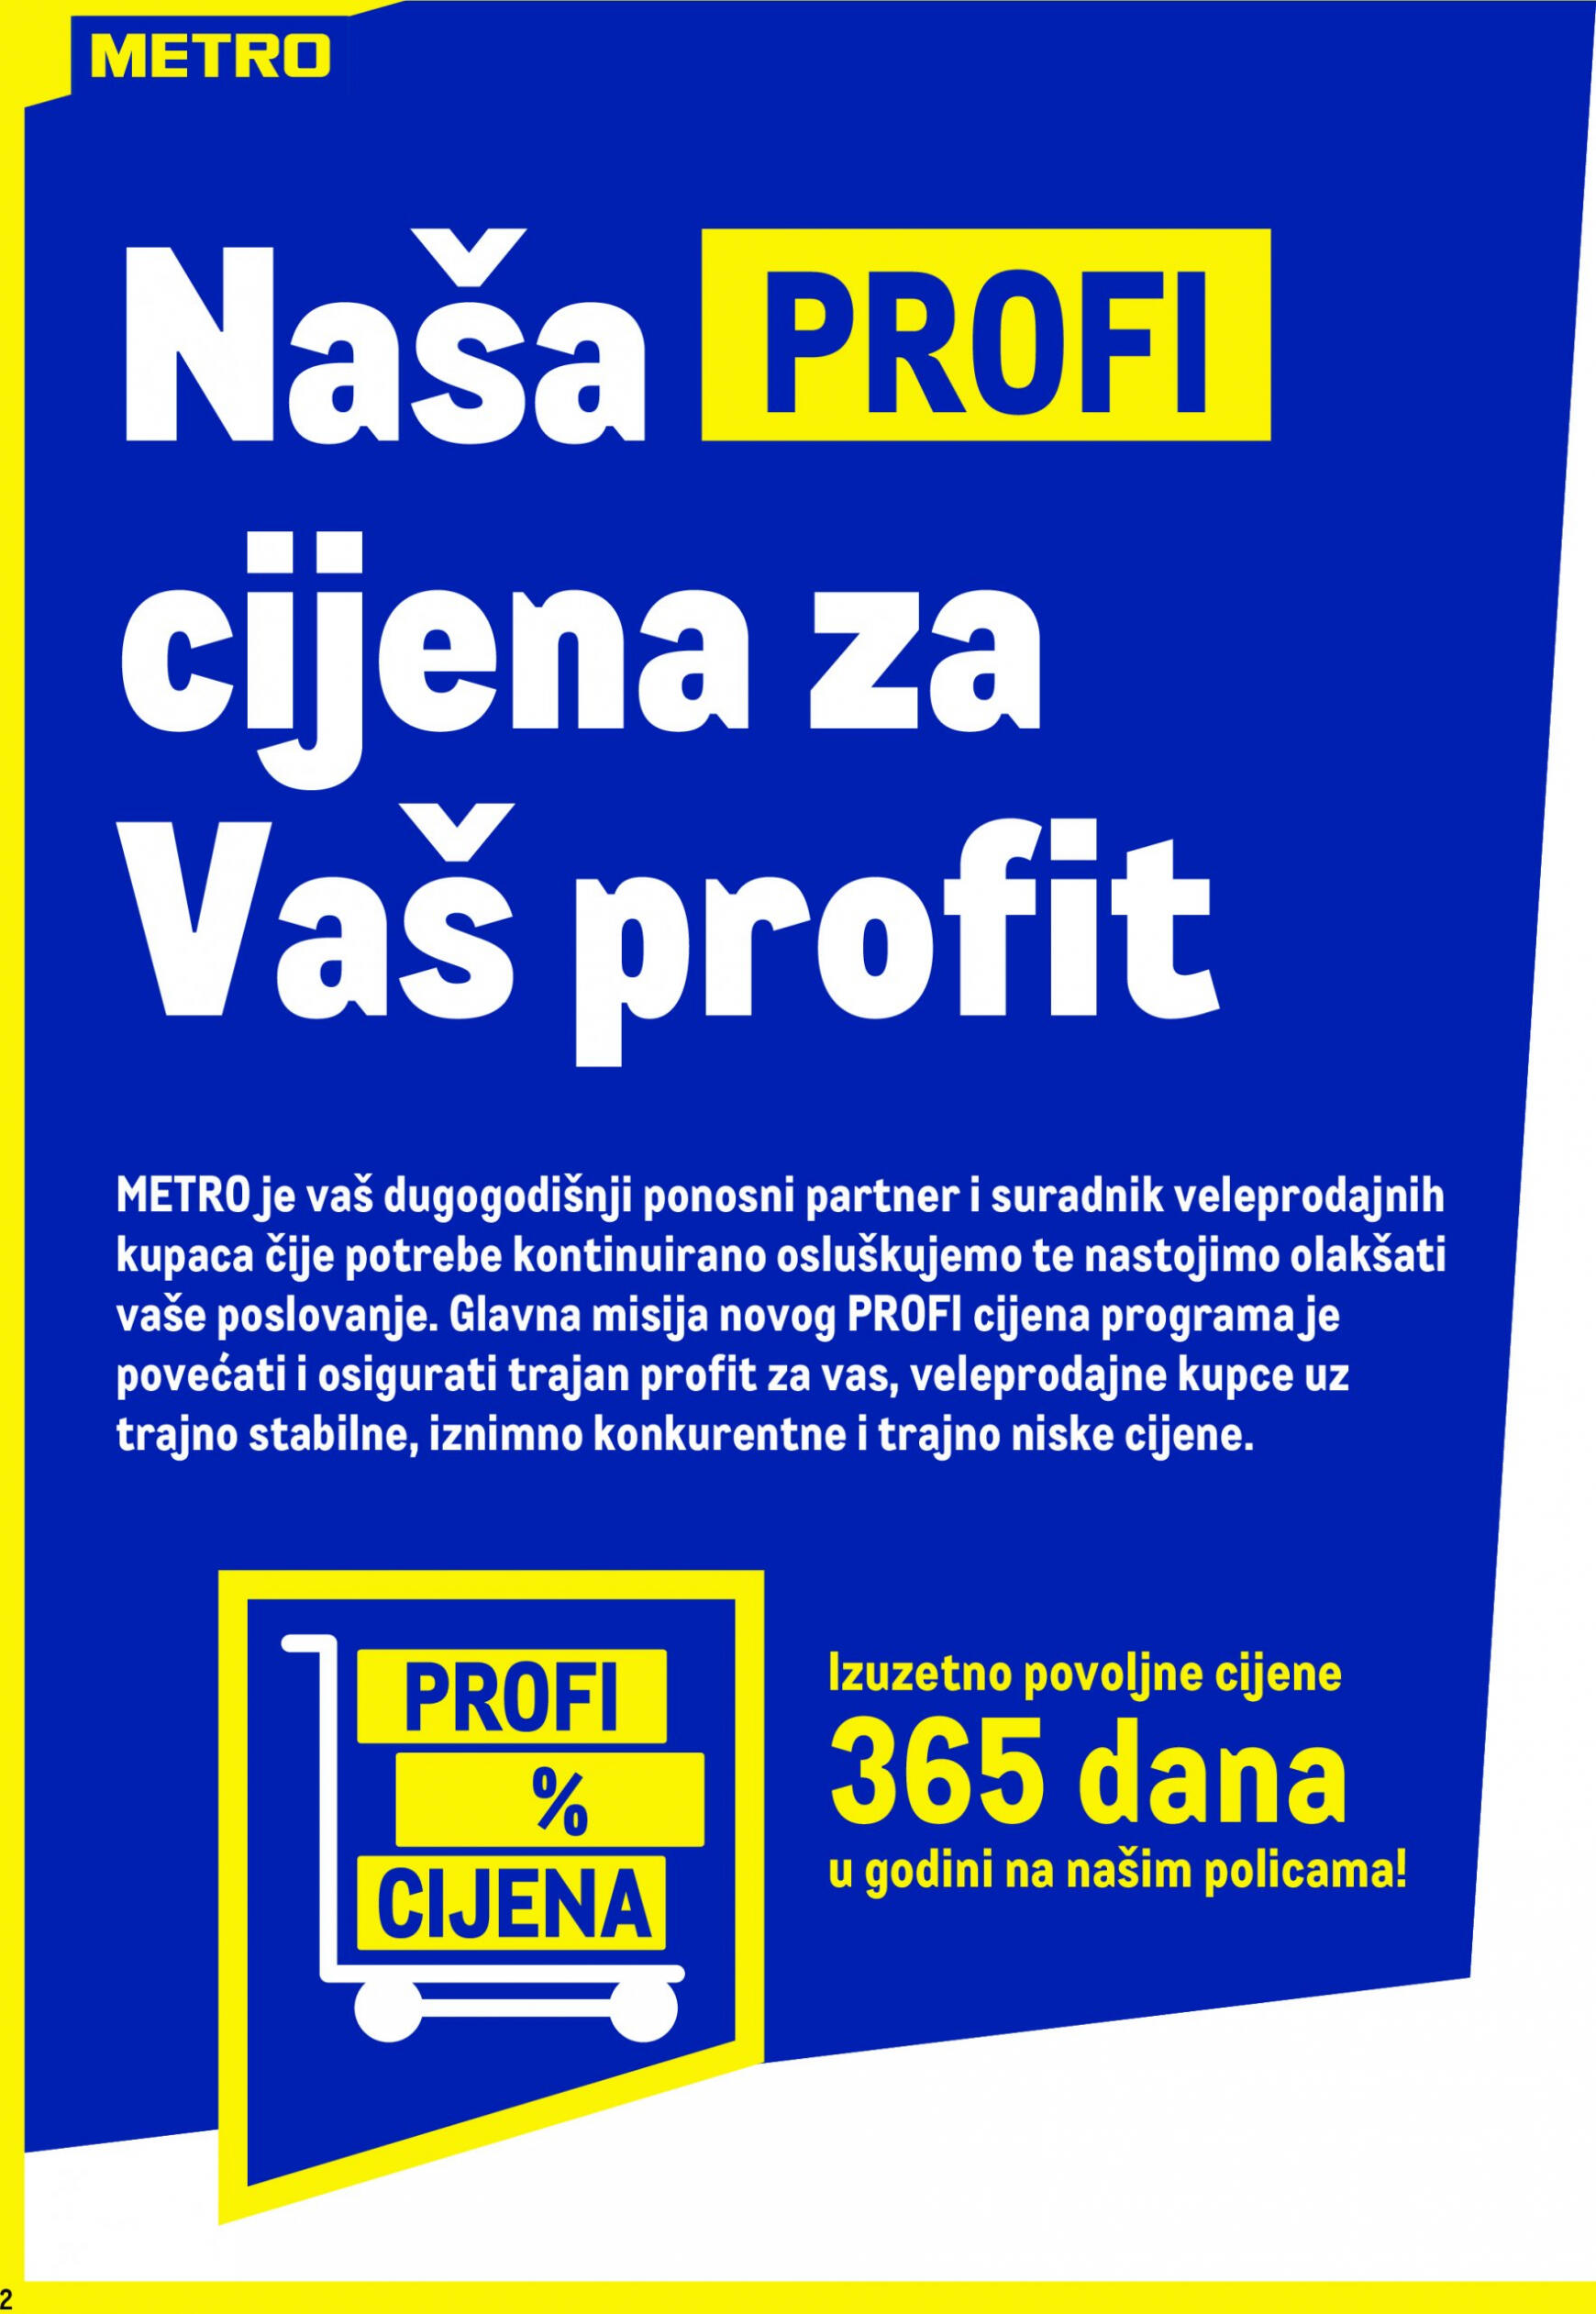 metro - Novi katalog Metro - Profi cijena 02.05. - 31.05. - page: 2